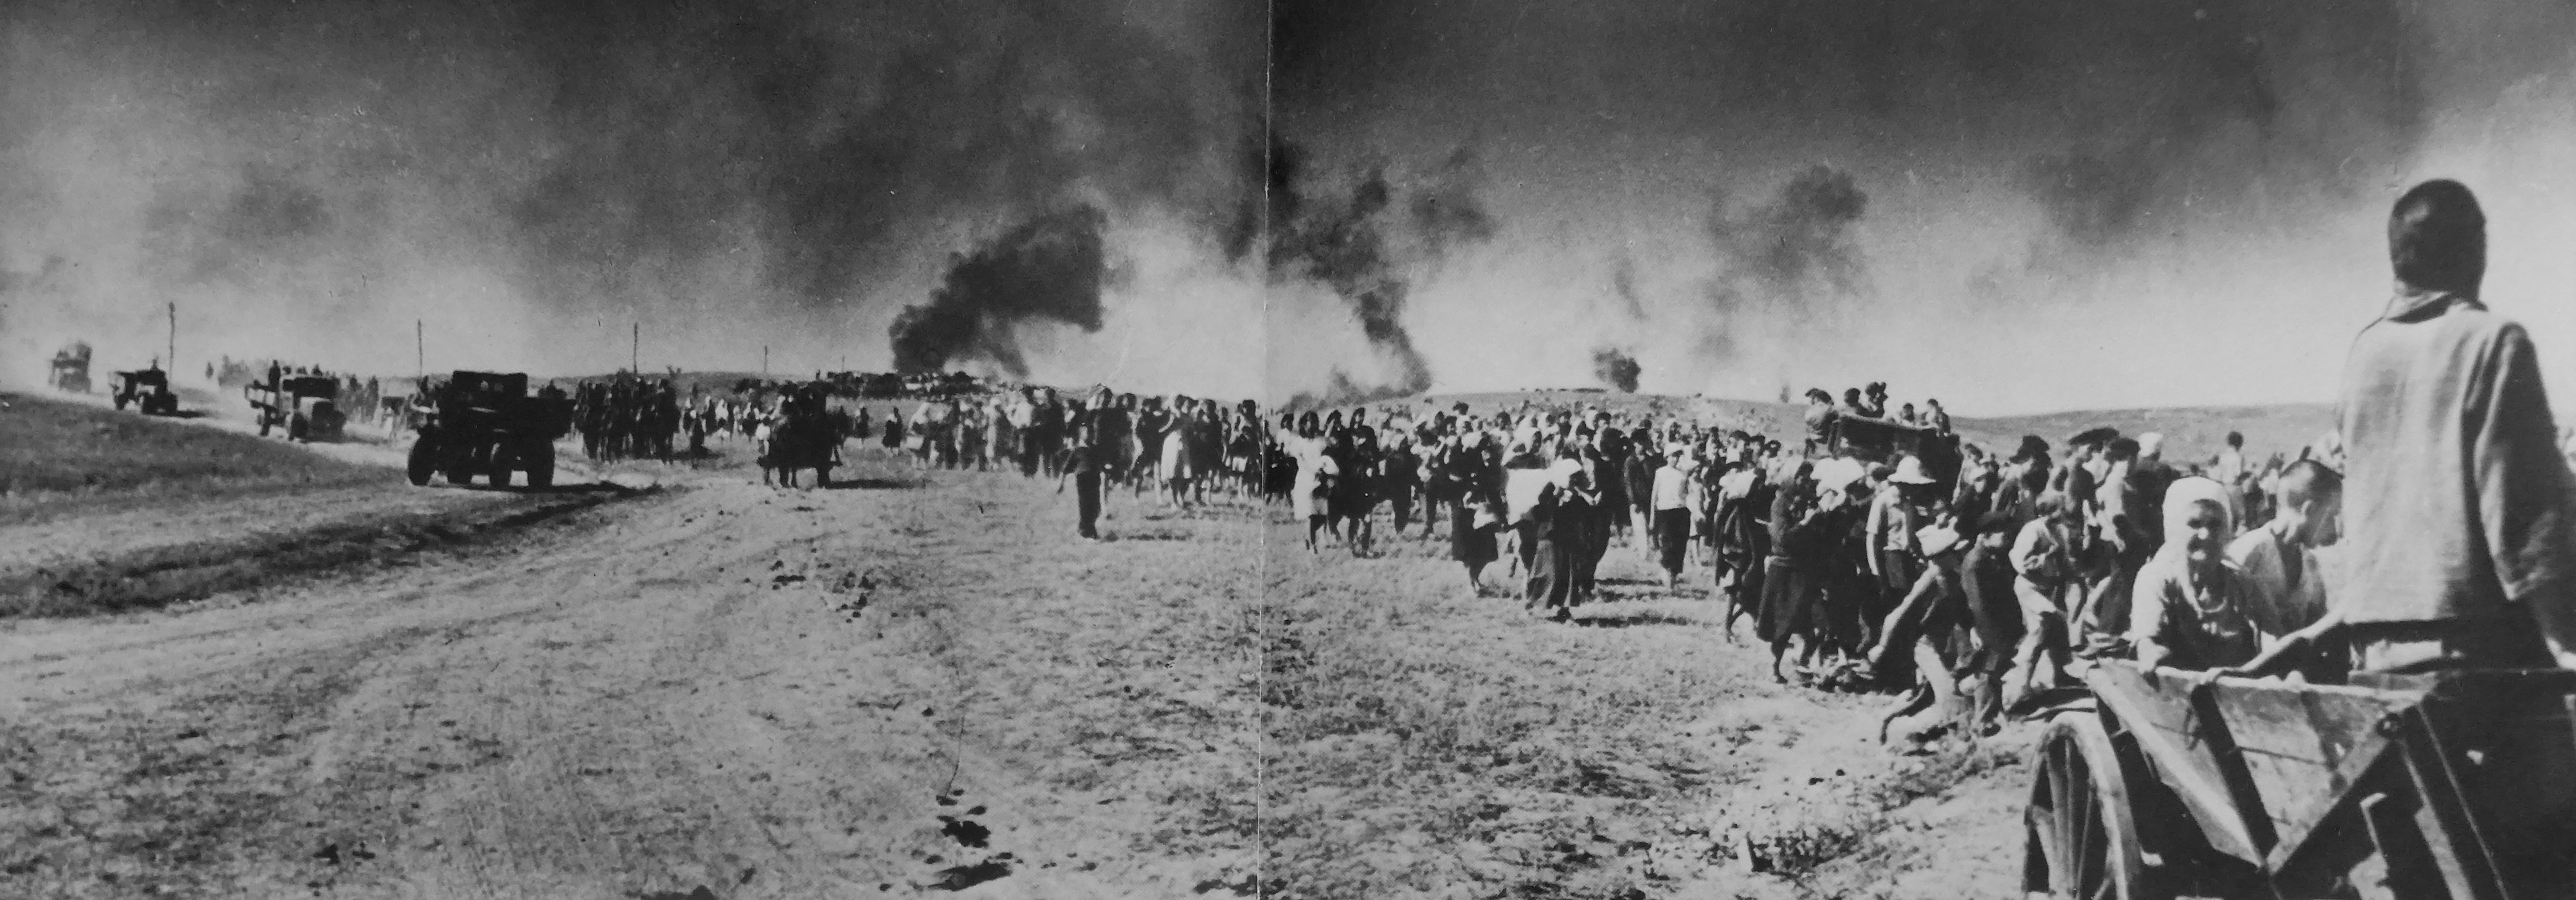 Первые дни великой. Бои 22 июня 1941. Начало войны 1941 беженцы.